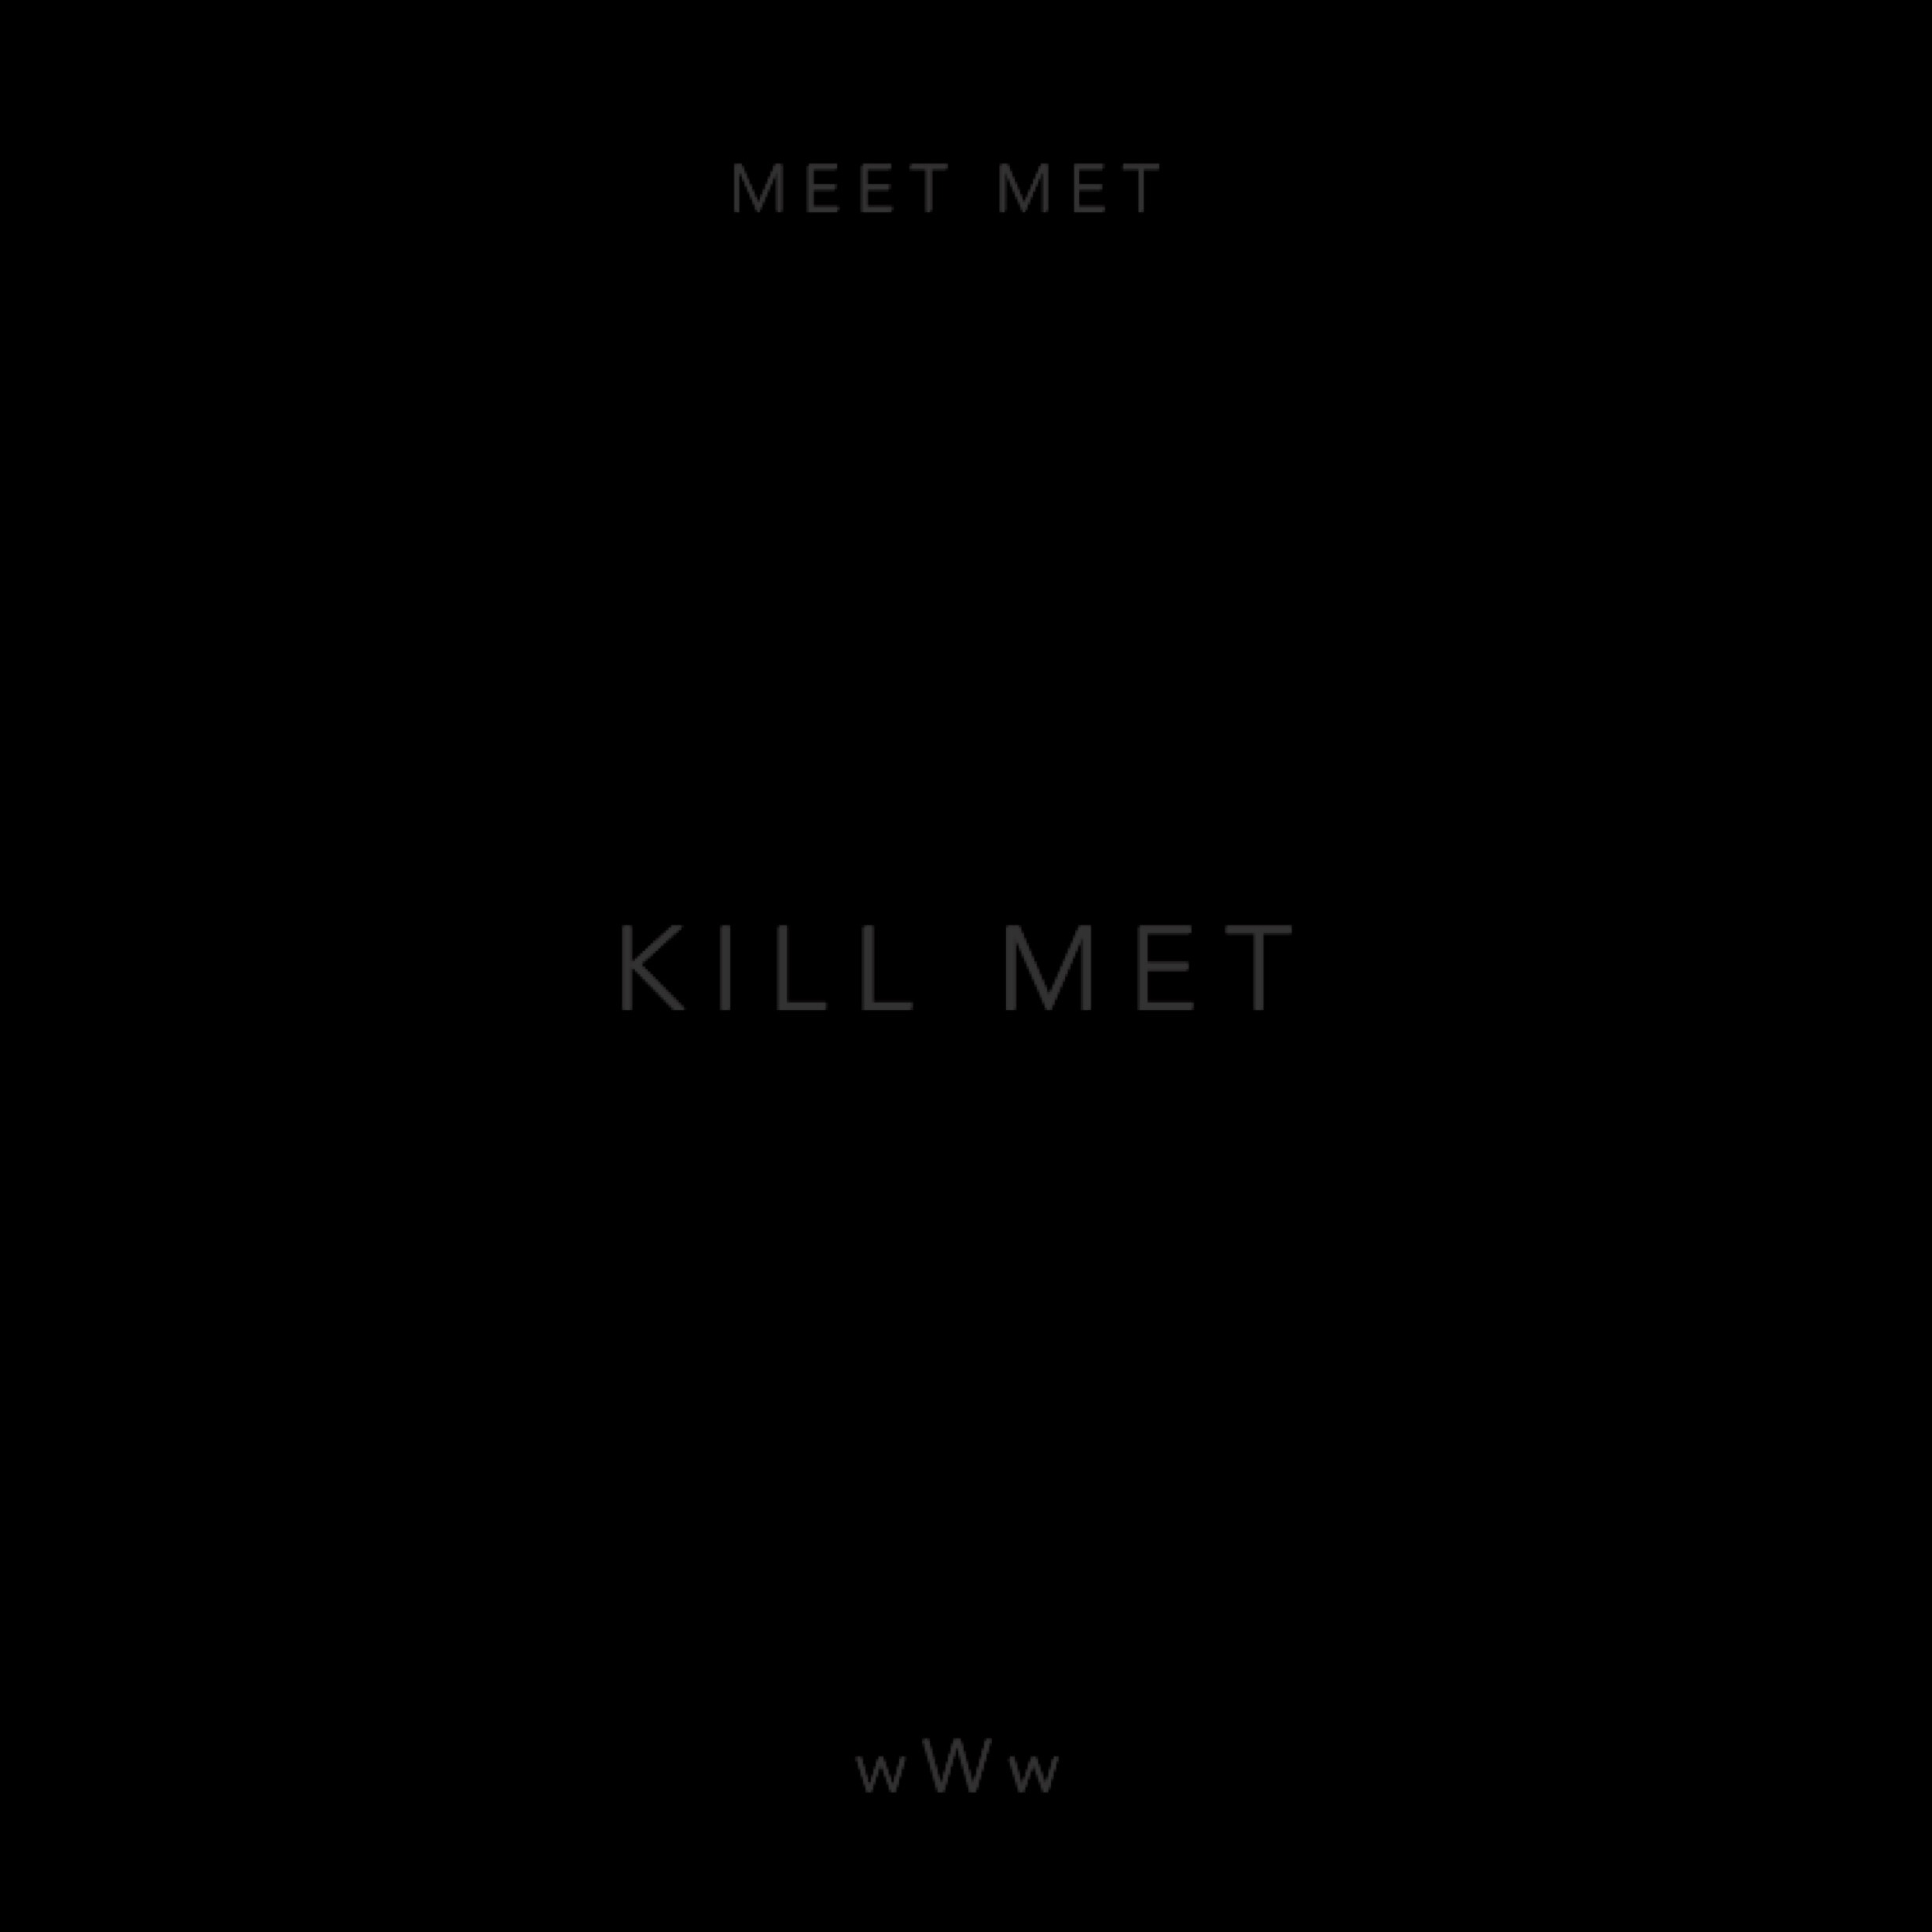 MEET MET - KILL MET (PROD BY KARIS)